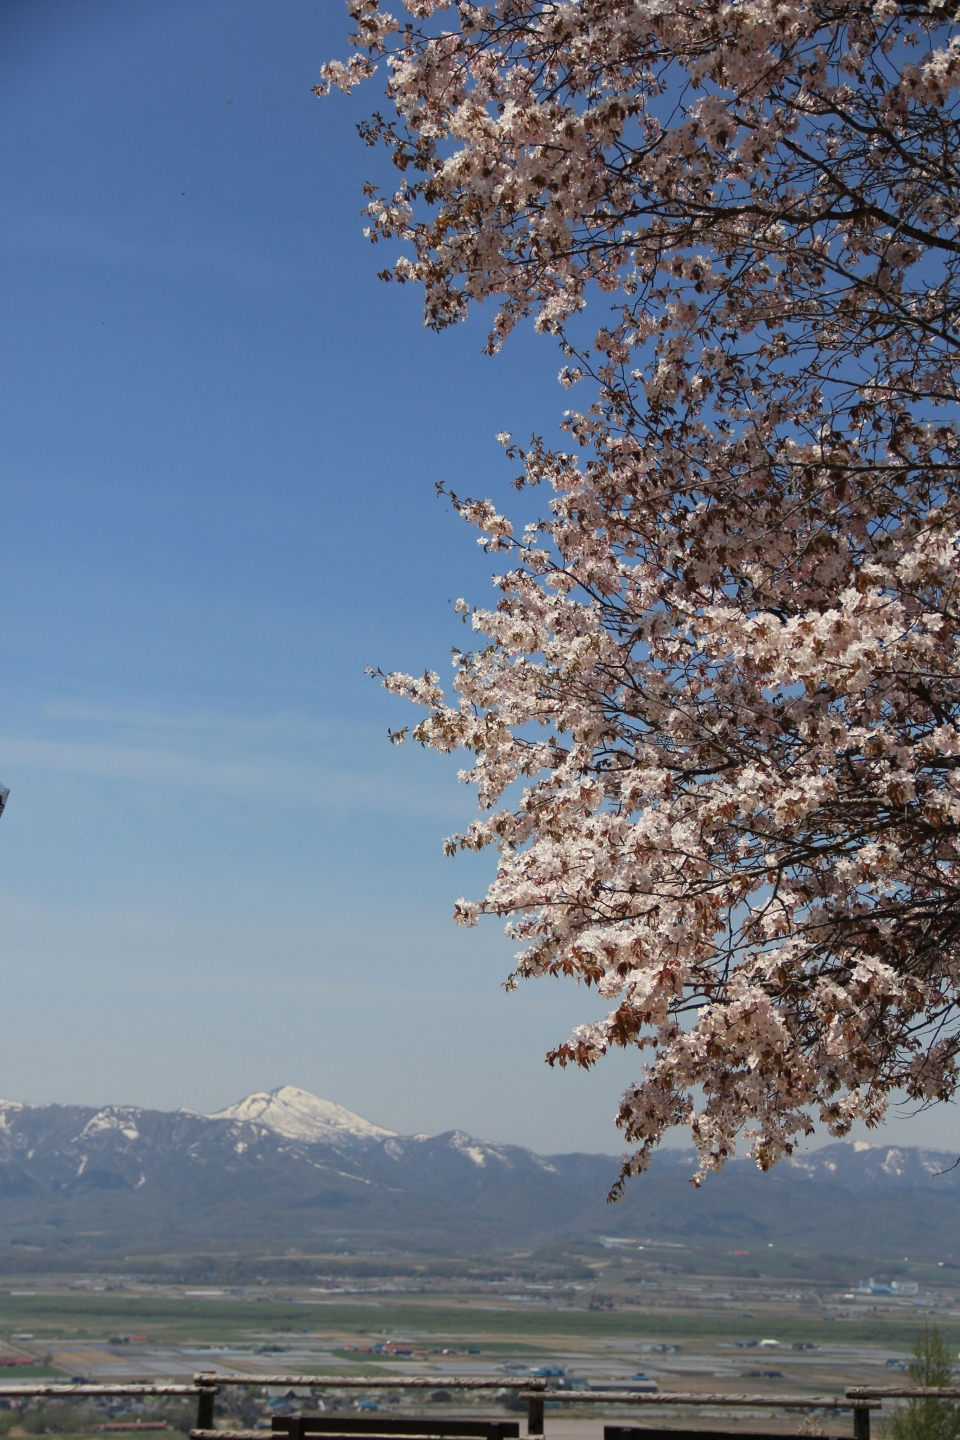 にわ山公園の桜、冠雪したピンネシリ岳が奥に見える写真です